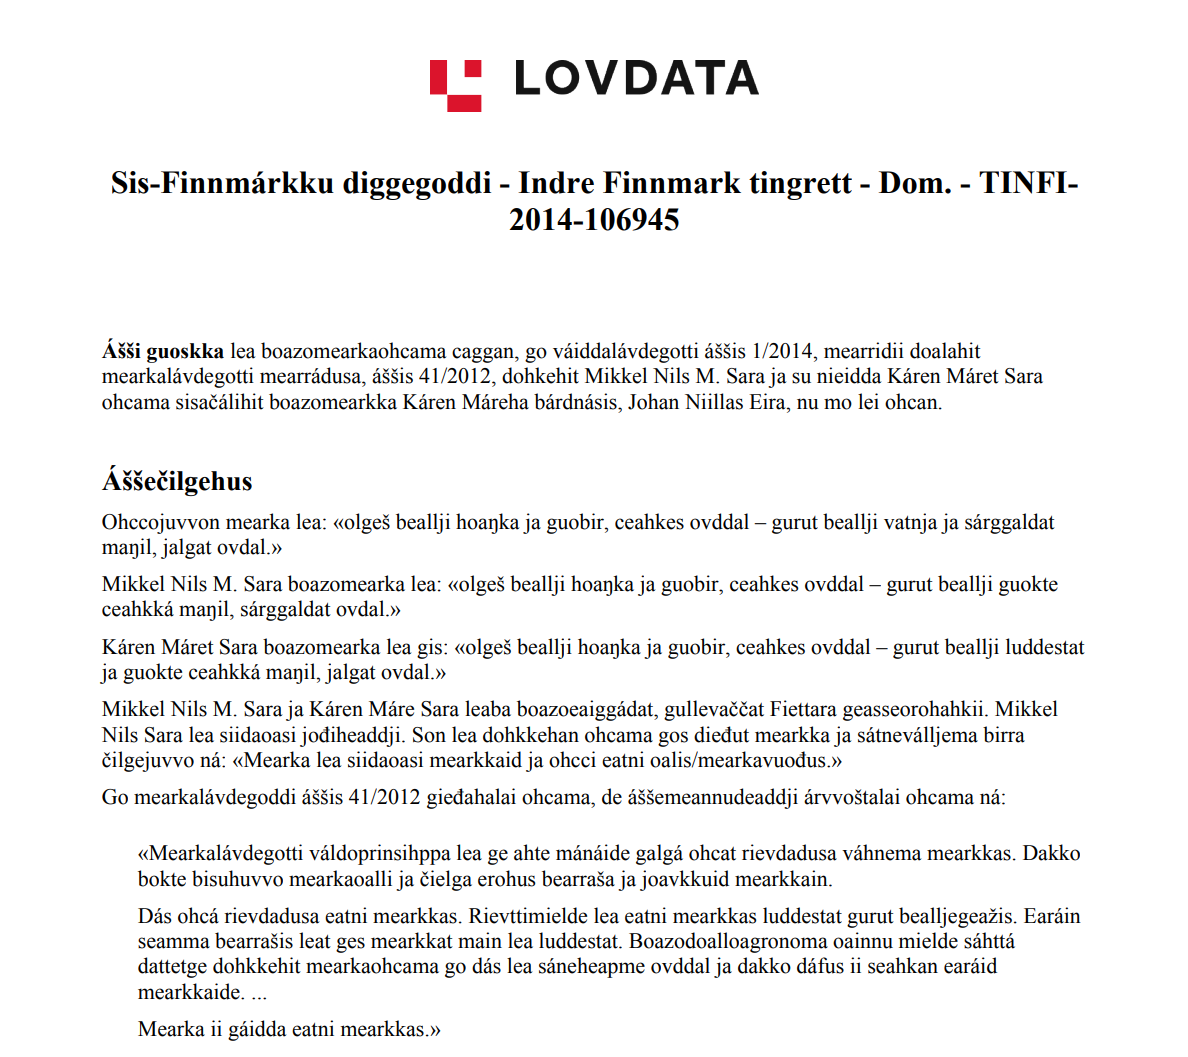 Skjermbilde av første side av dommen TINFI-2014-106945 på samisk.